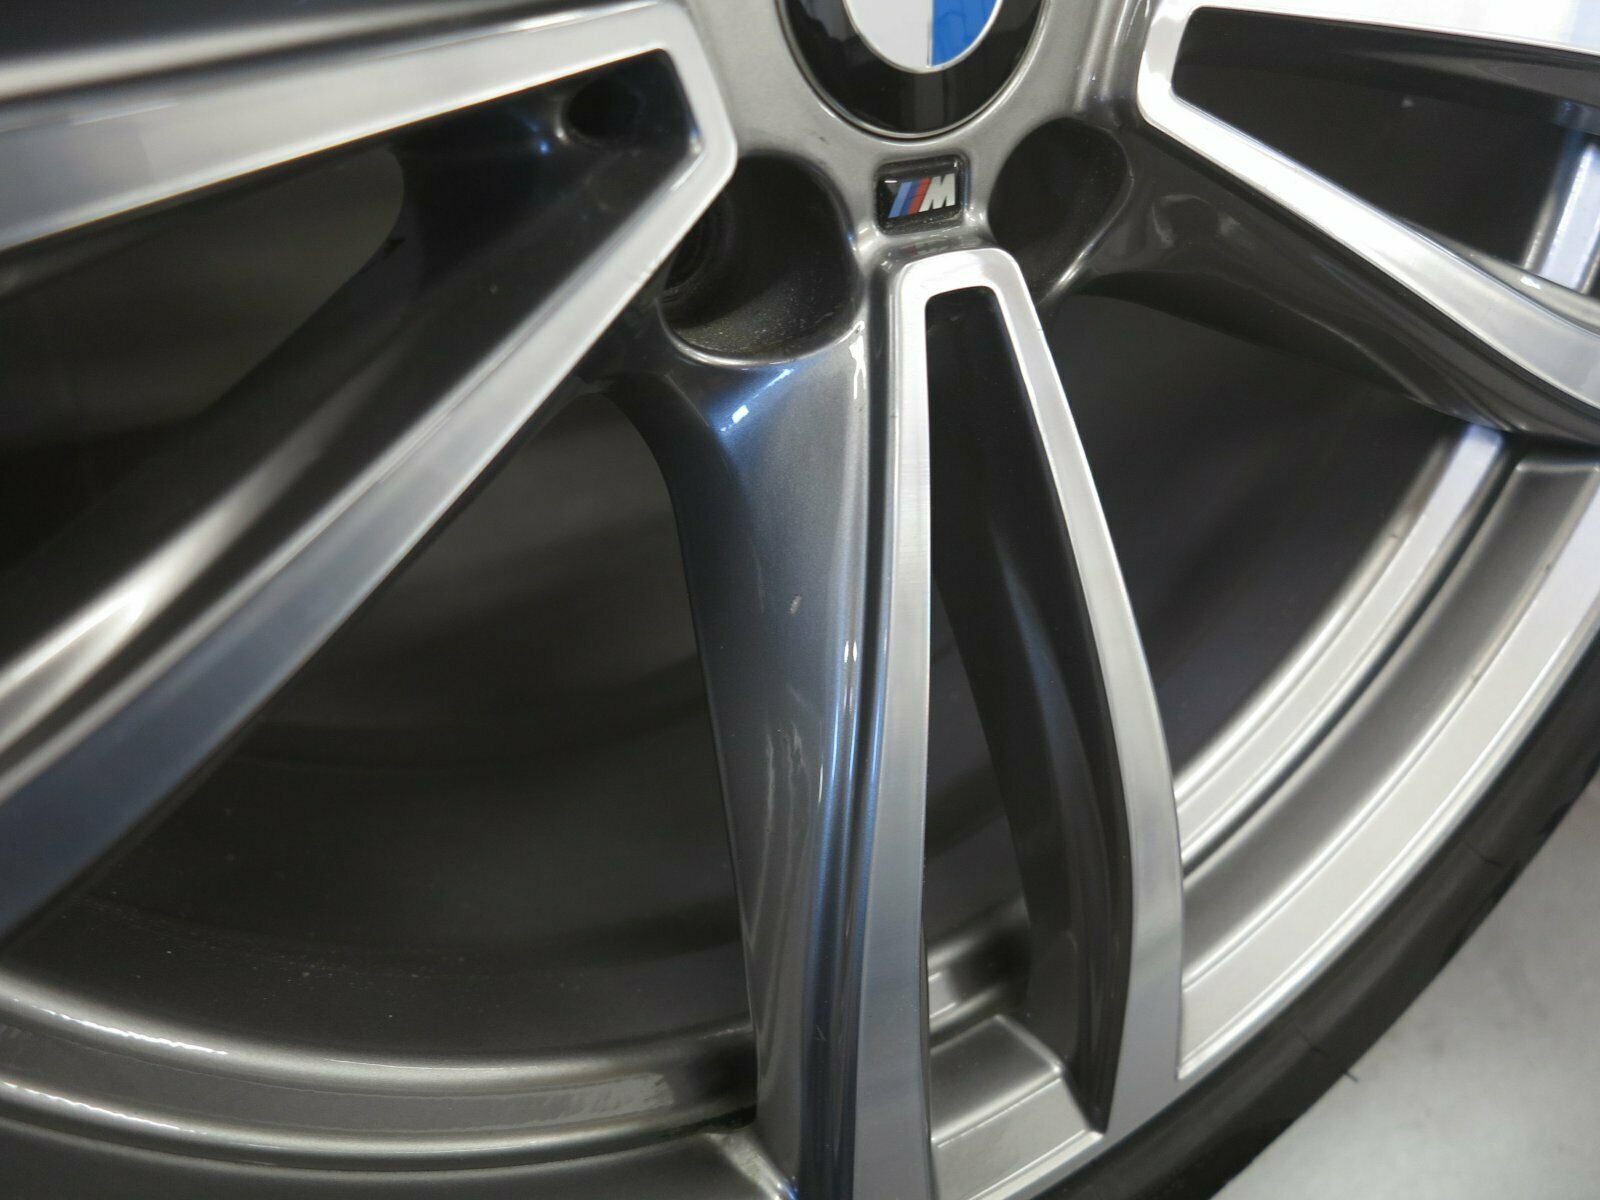 19 pouces roues d'été d'origine BMW Série 7 G11 G12 Série 6 GT G32 M647 Jantes en aluminium 7850579